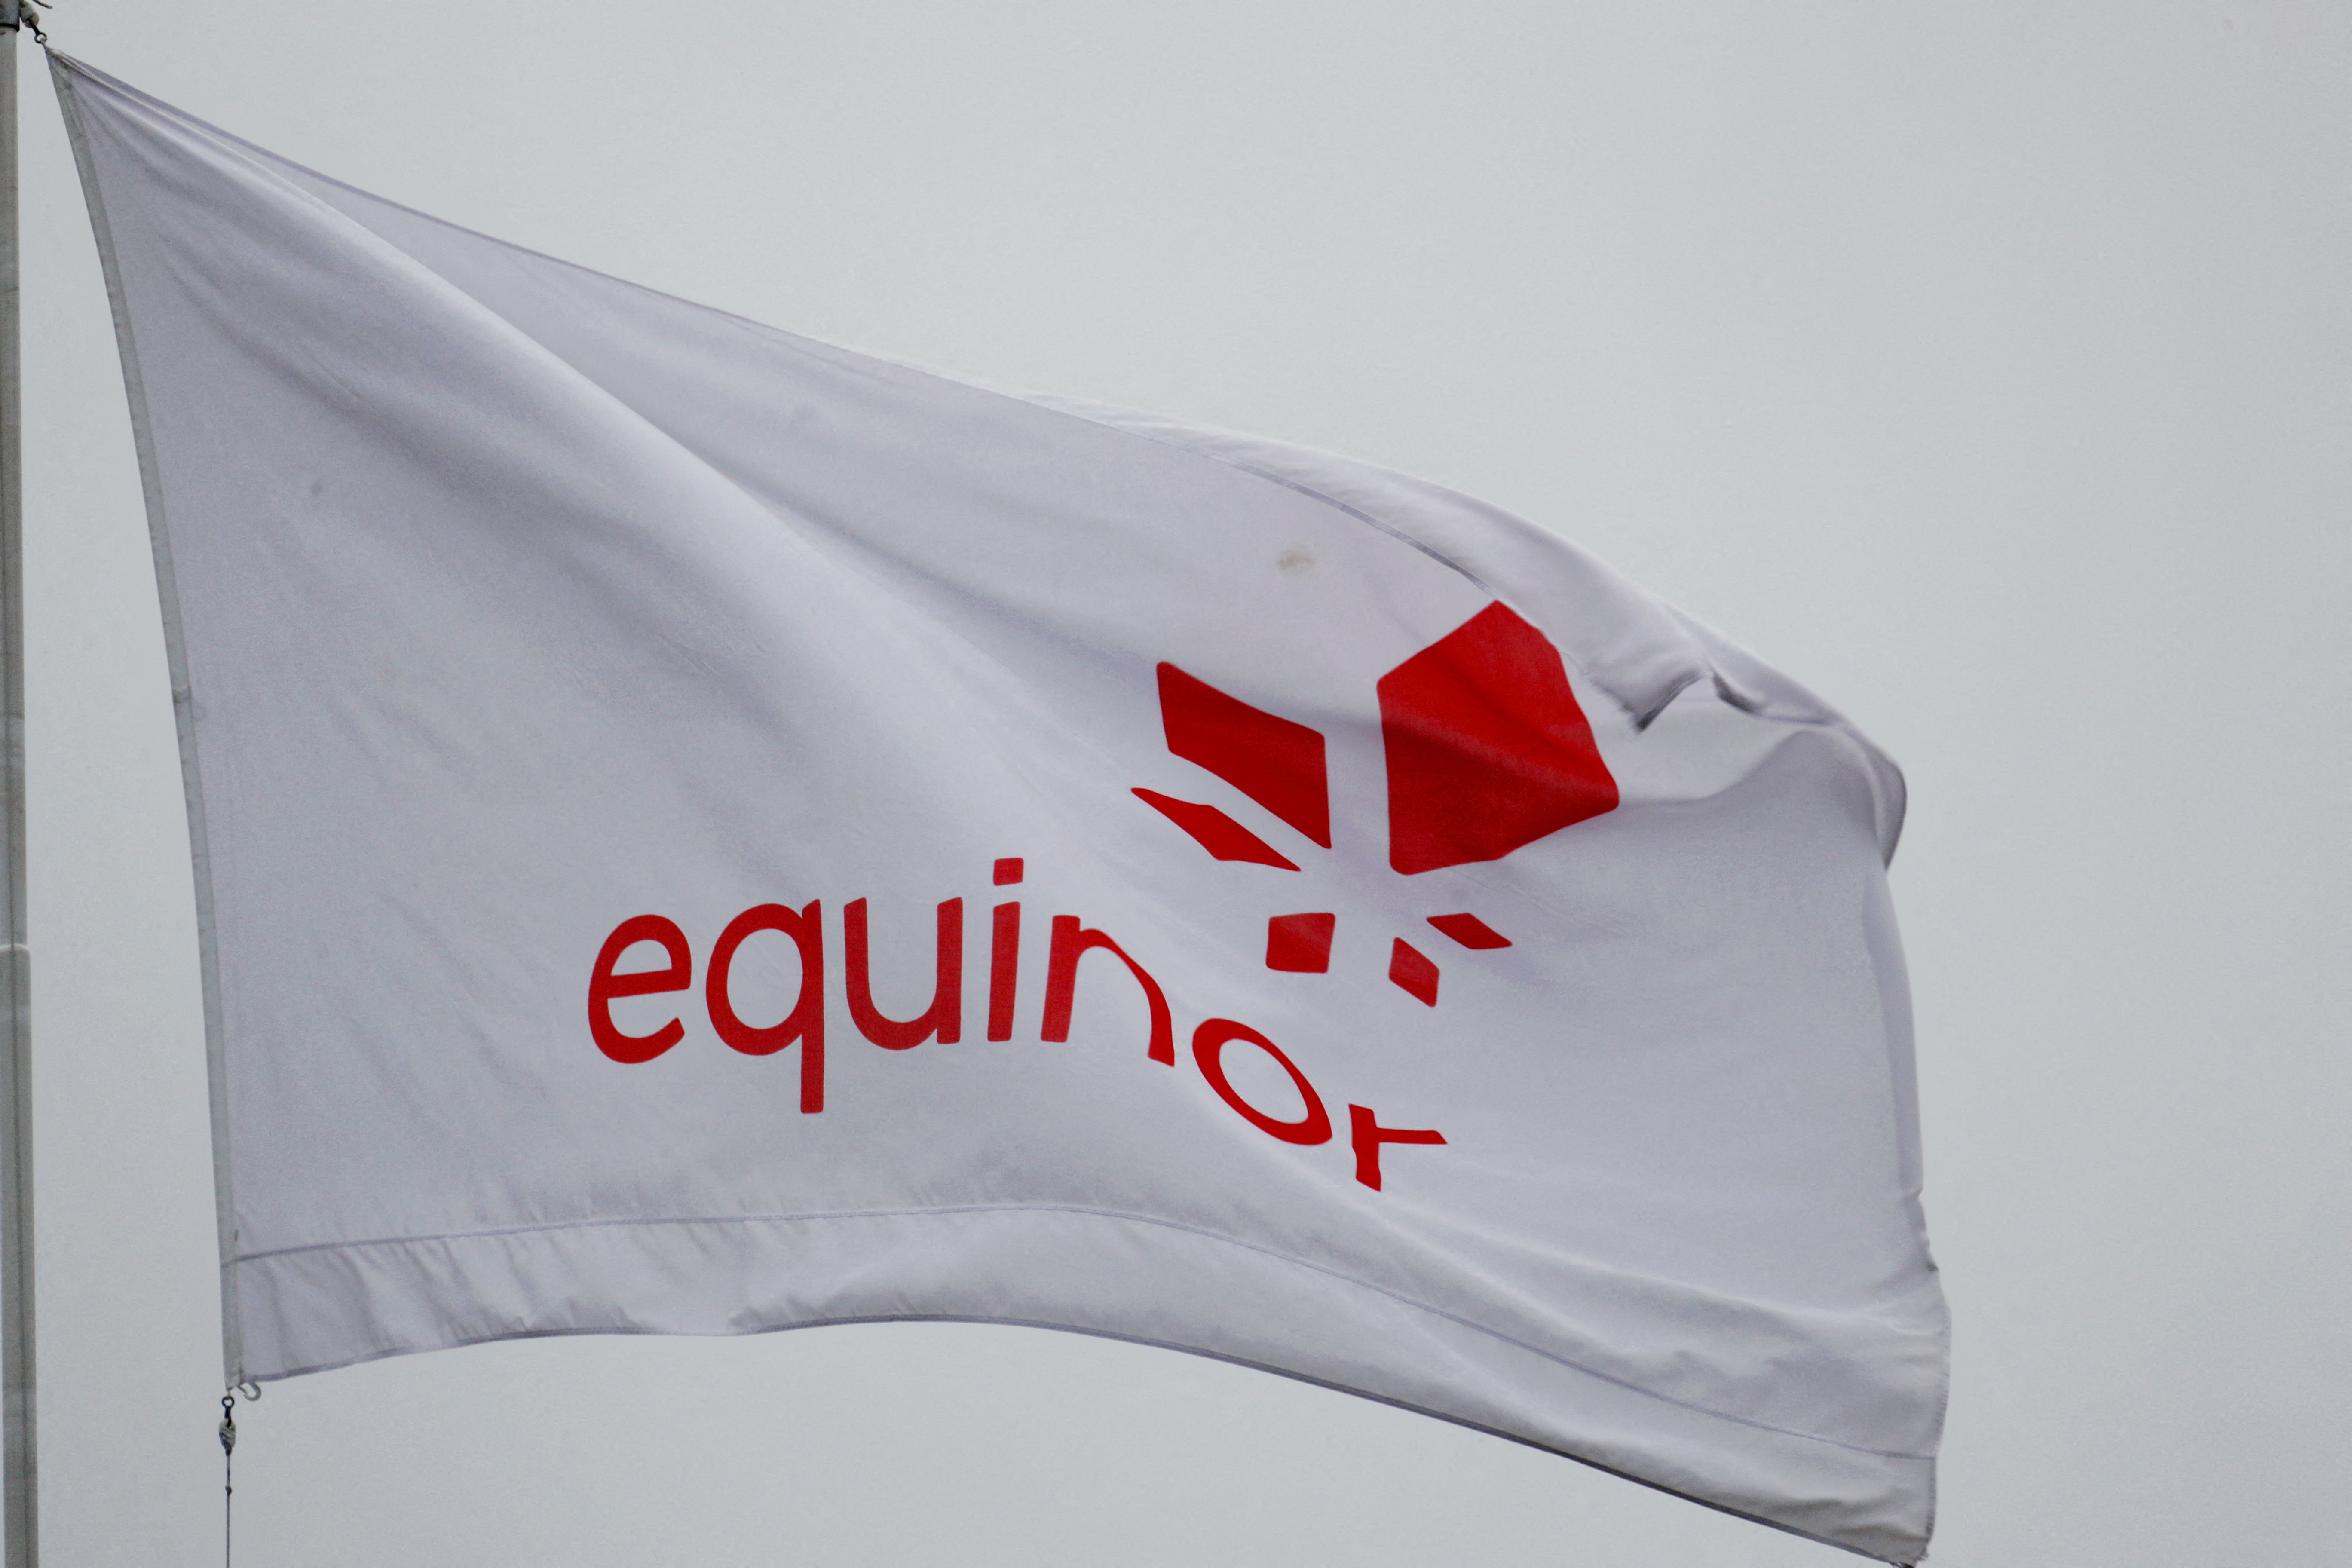 ノルウェーのエネルギー会社 Equinor の旗がスタヴァンゲル本社に掲げられています